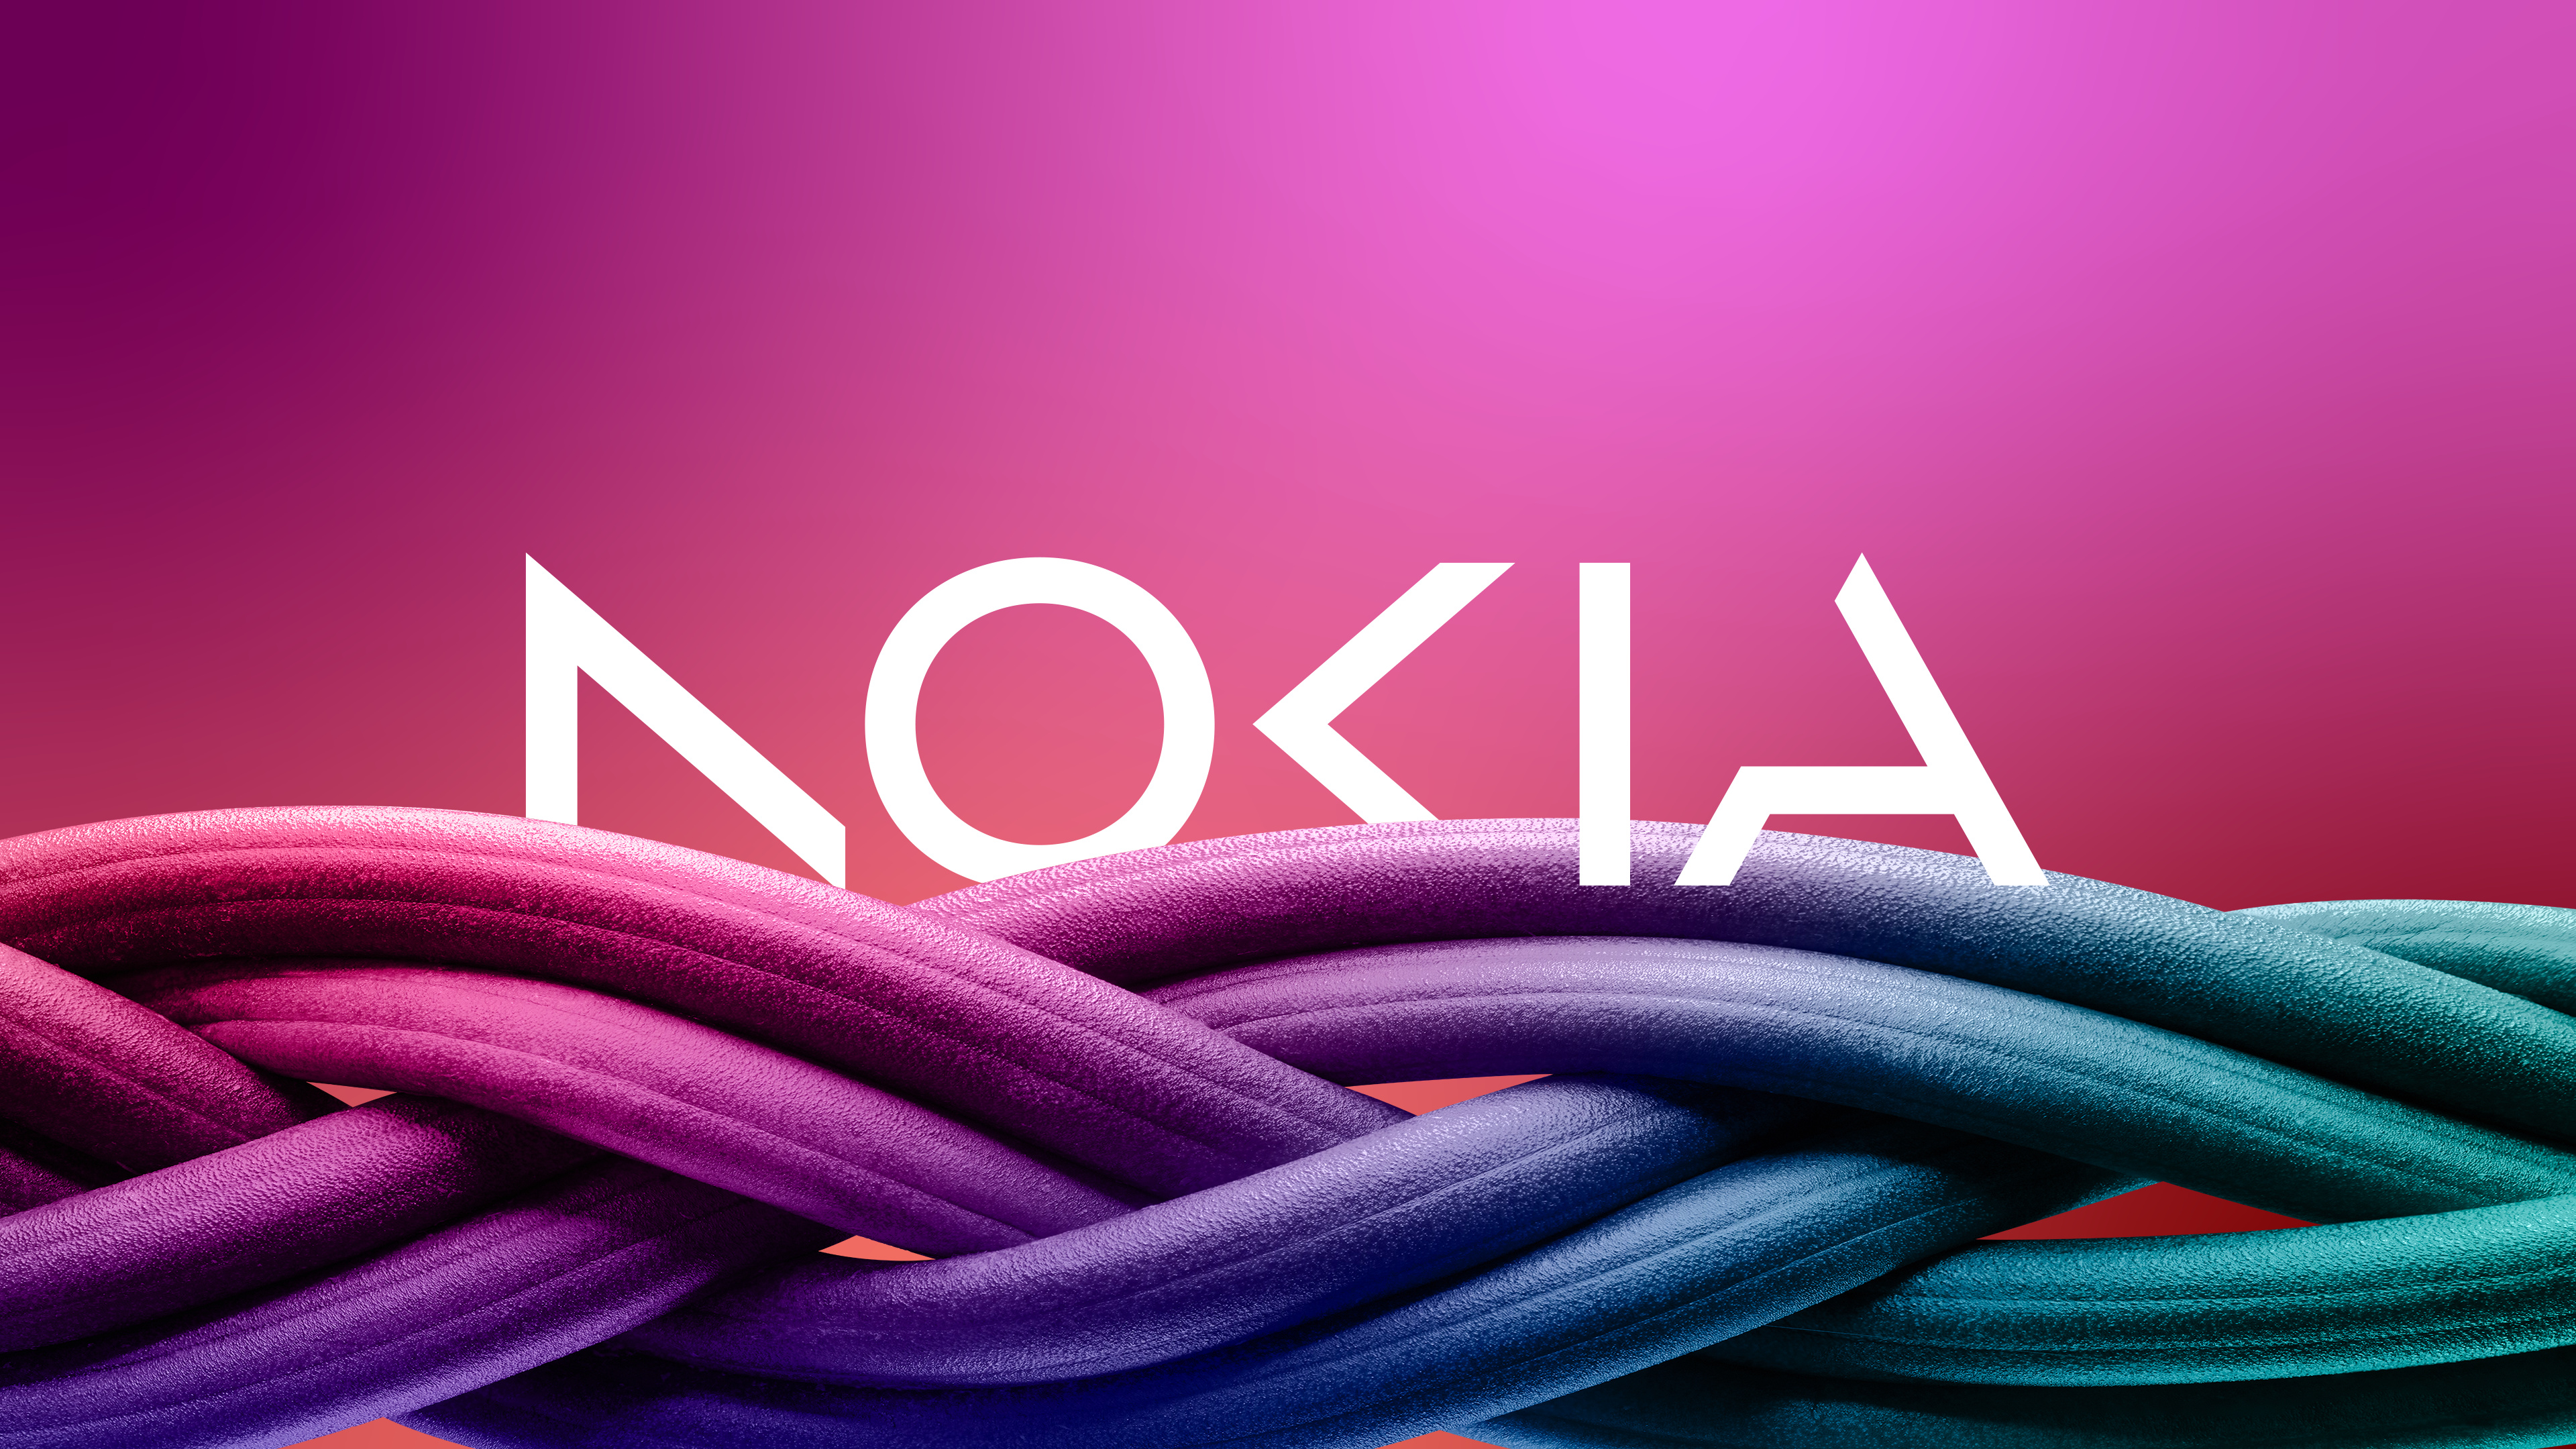 Nokia refreshed logo